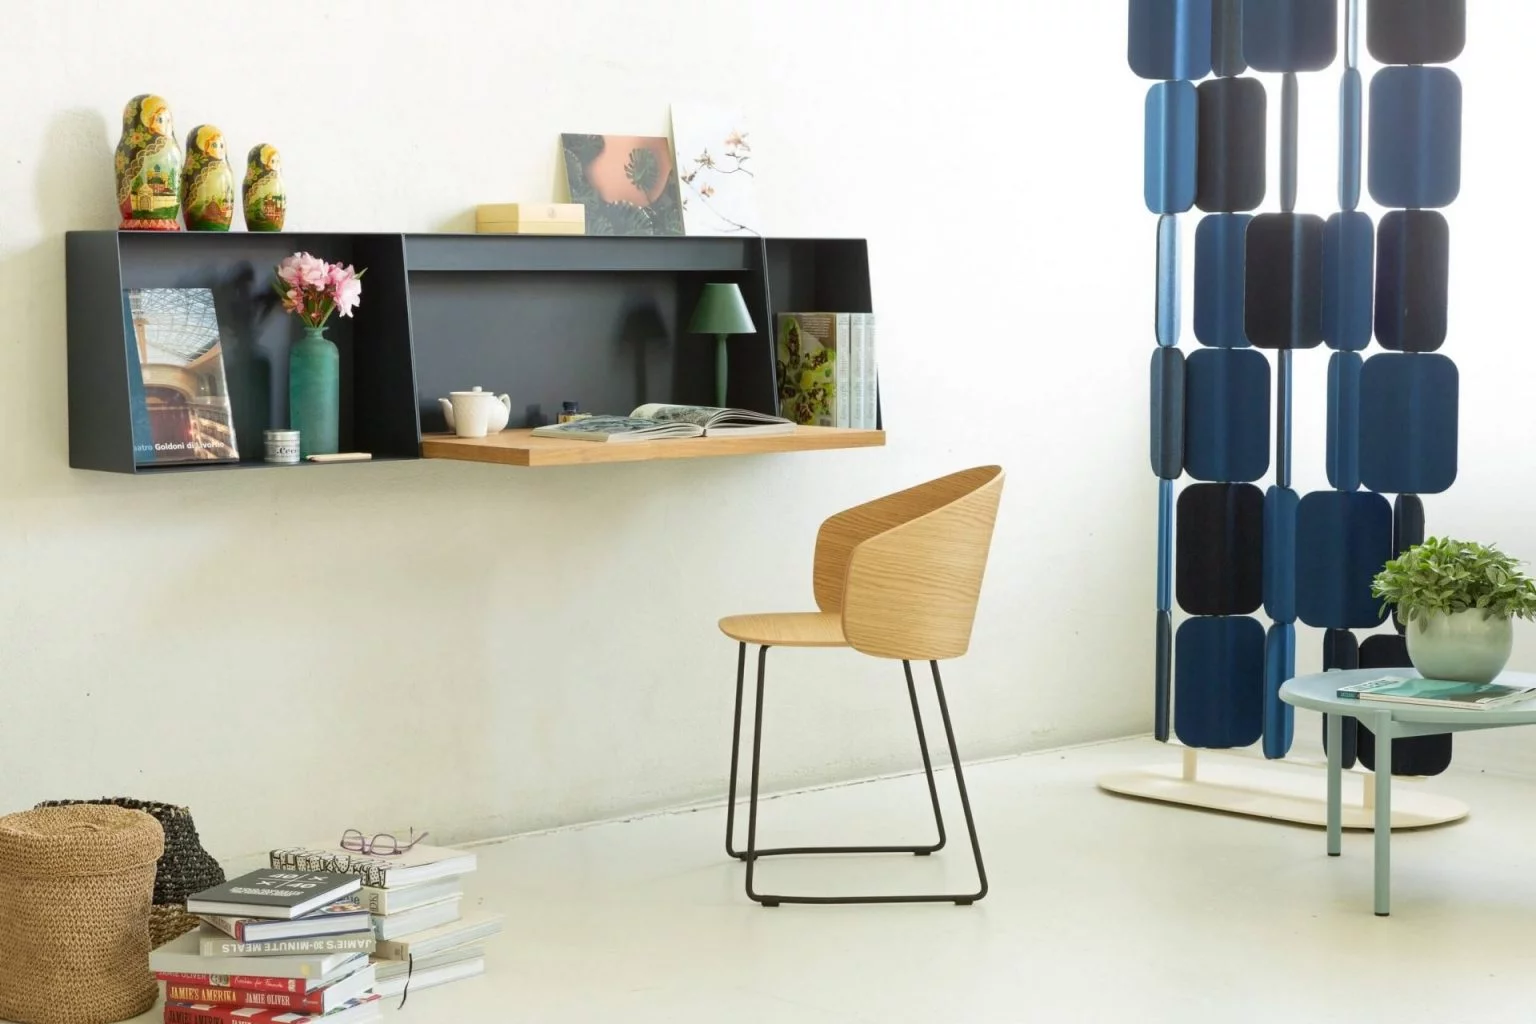 Le bureau, le meuble ultra tendance qui s’impose plus que jamais dans nos foyers